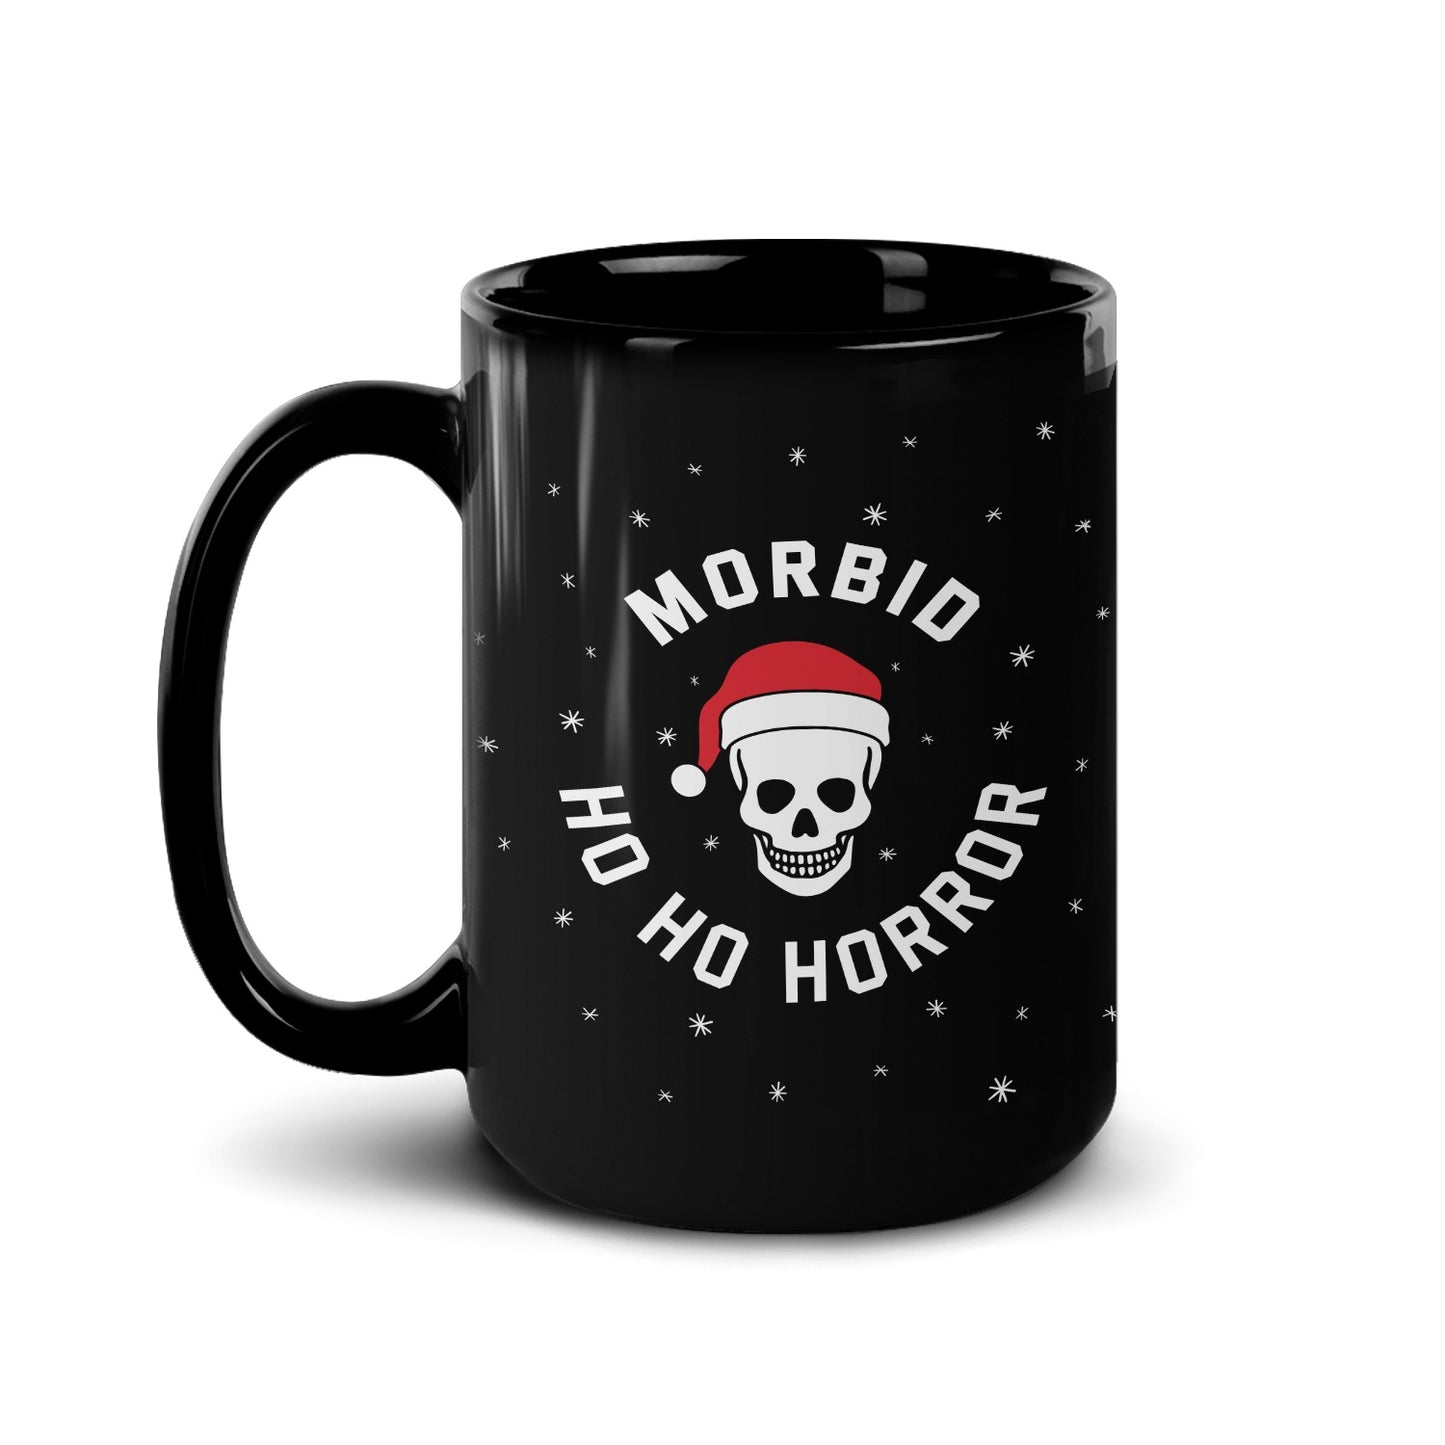 Morbid Ho Ho Horror Personalized 15 oz Black Mug